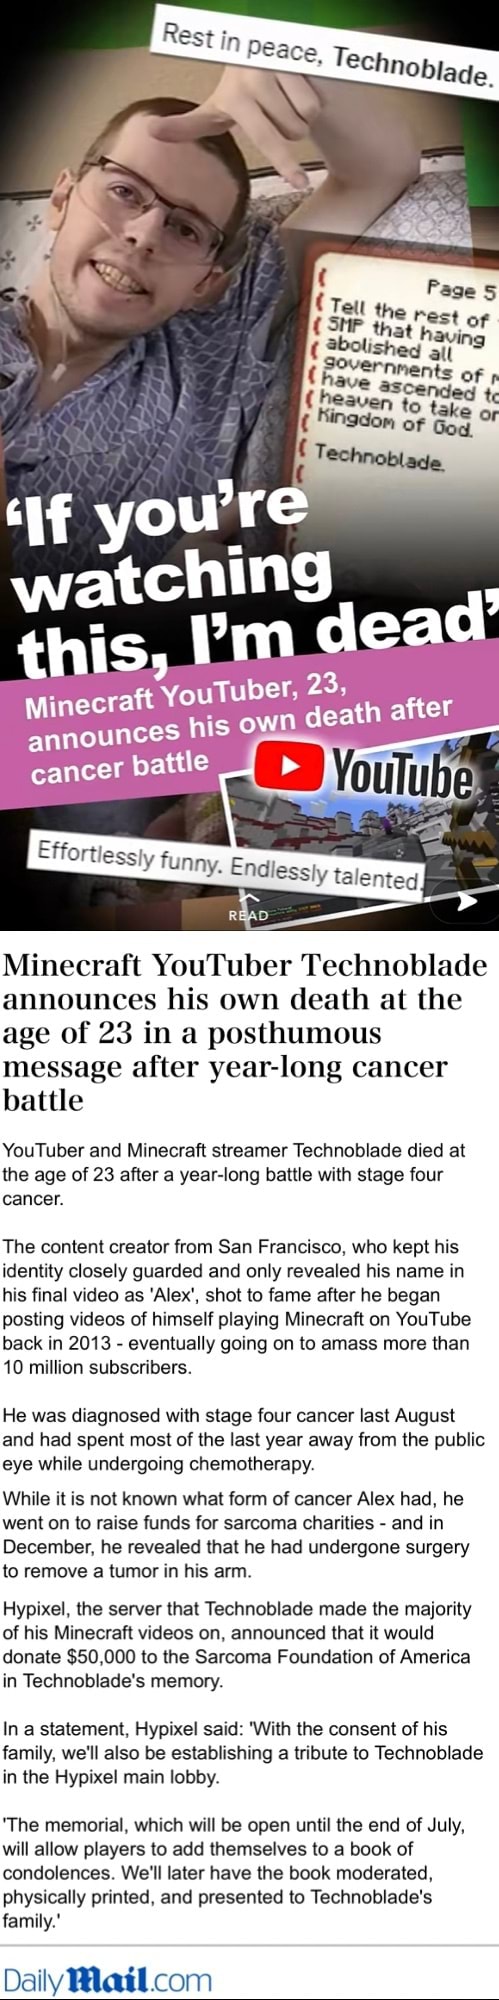 When did Minecraft streamer Technoblade get cancer?